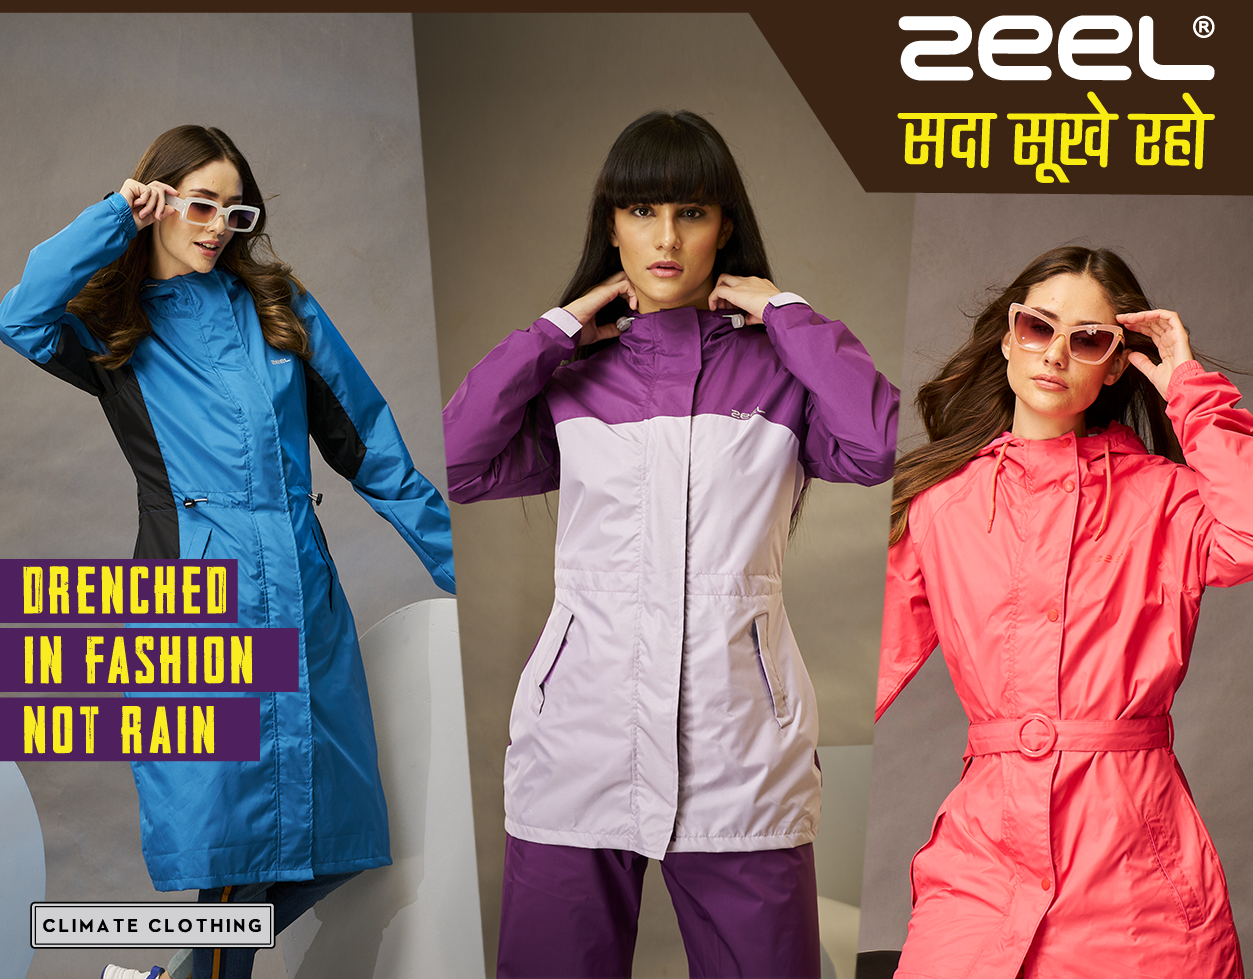 raincoat for women zeel